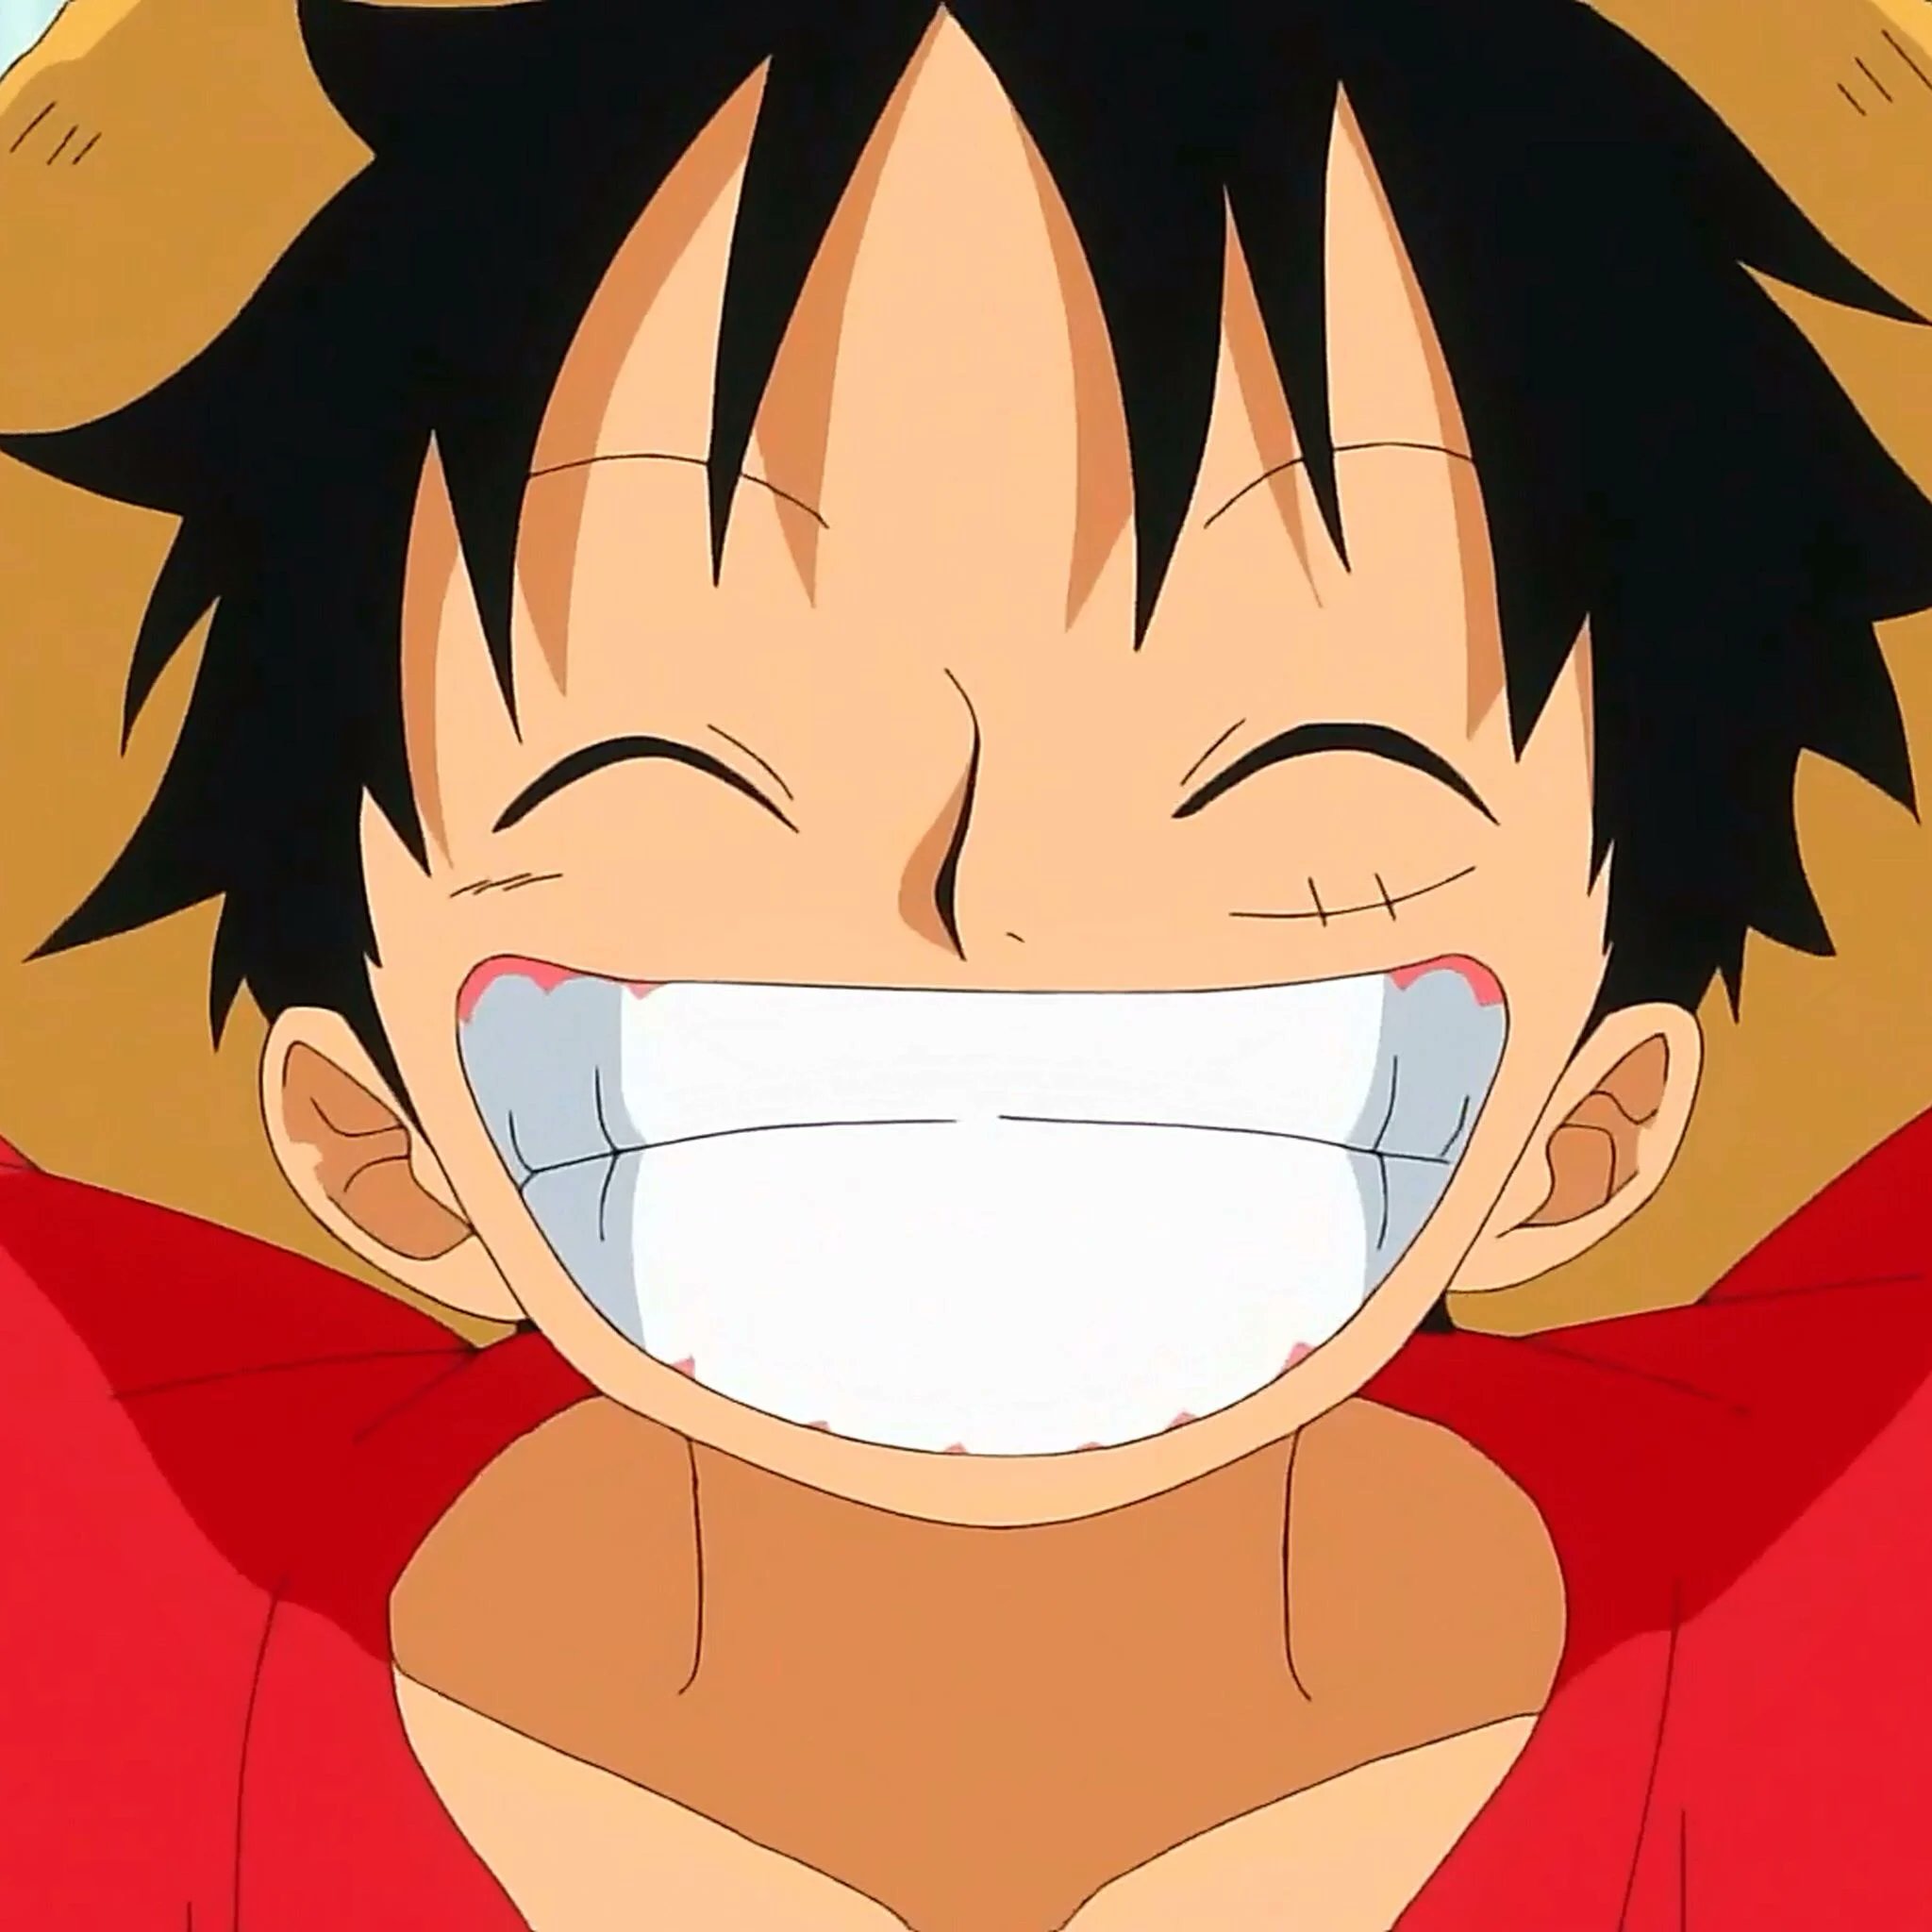 Hình Ảnh Avatar Luffy Đẹp Cute Hột Me Cho Fan One Piece